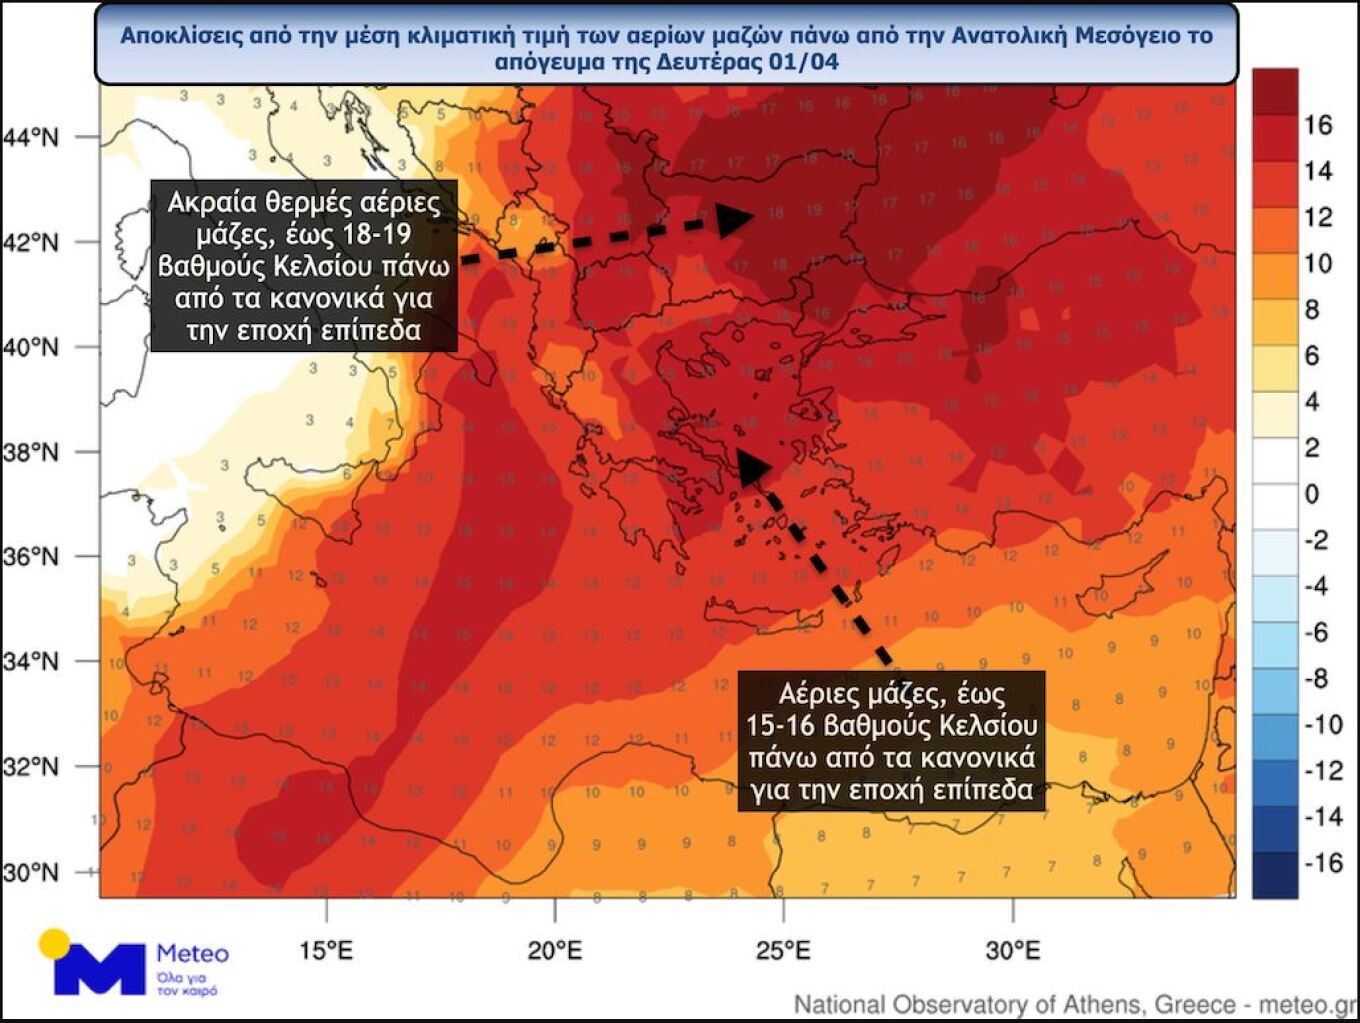 Ιδιαίτερα θερμός για την εποχή είναι ο καιρός τις τελευταίες ημέρες. Κύρια χαρακτηριστικά του είναι η υψηλές θερμοκρασίες και η μεταφορά αφρικανικής σκόνης. Η αφρικανική σκόνη δεν αναμένεται να υποχωρήσει πριν από την Τρίτη 2 Απριλίου ενώ σύμφωνα με το meteo.gr αναμένονται ακραία θερμές για την εποχή αέριες μάζες στην Ανατολική Ευρώπη αλλά και τη χώρα μας από την Κυριακή 31 Μαρτίου ως την Τρίτη 2 Απριλίου. Ενδεικτκά, το απόγευμα της Δευτέρας οι αέριες μάζες πάνω από τη χώρα μας θα είναι έως και 15-16 βαθμού